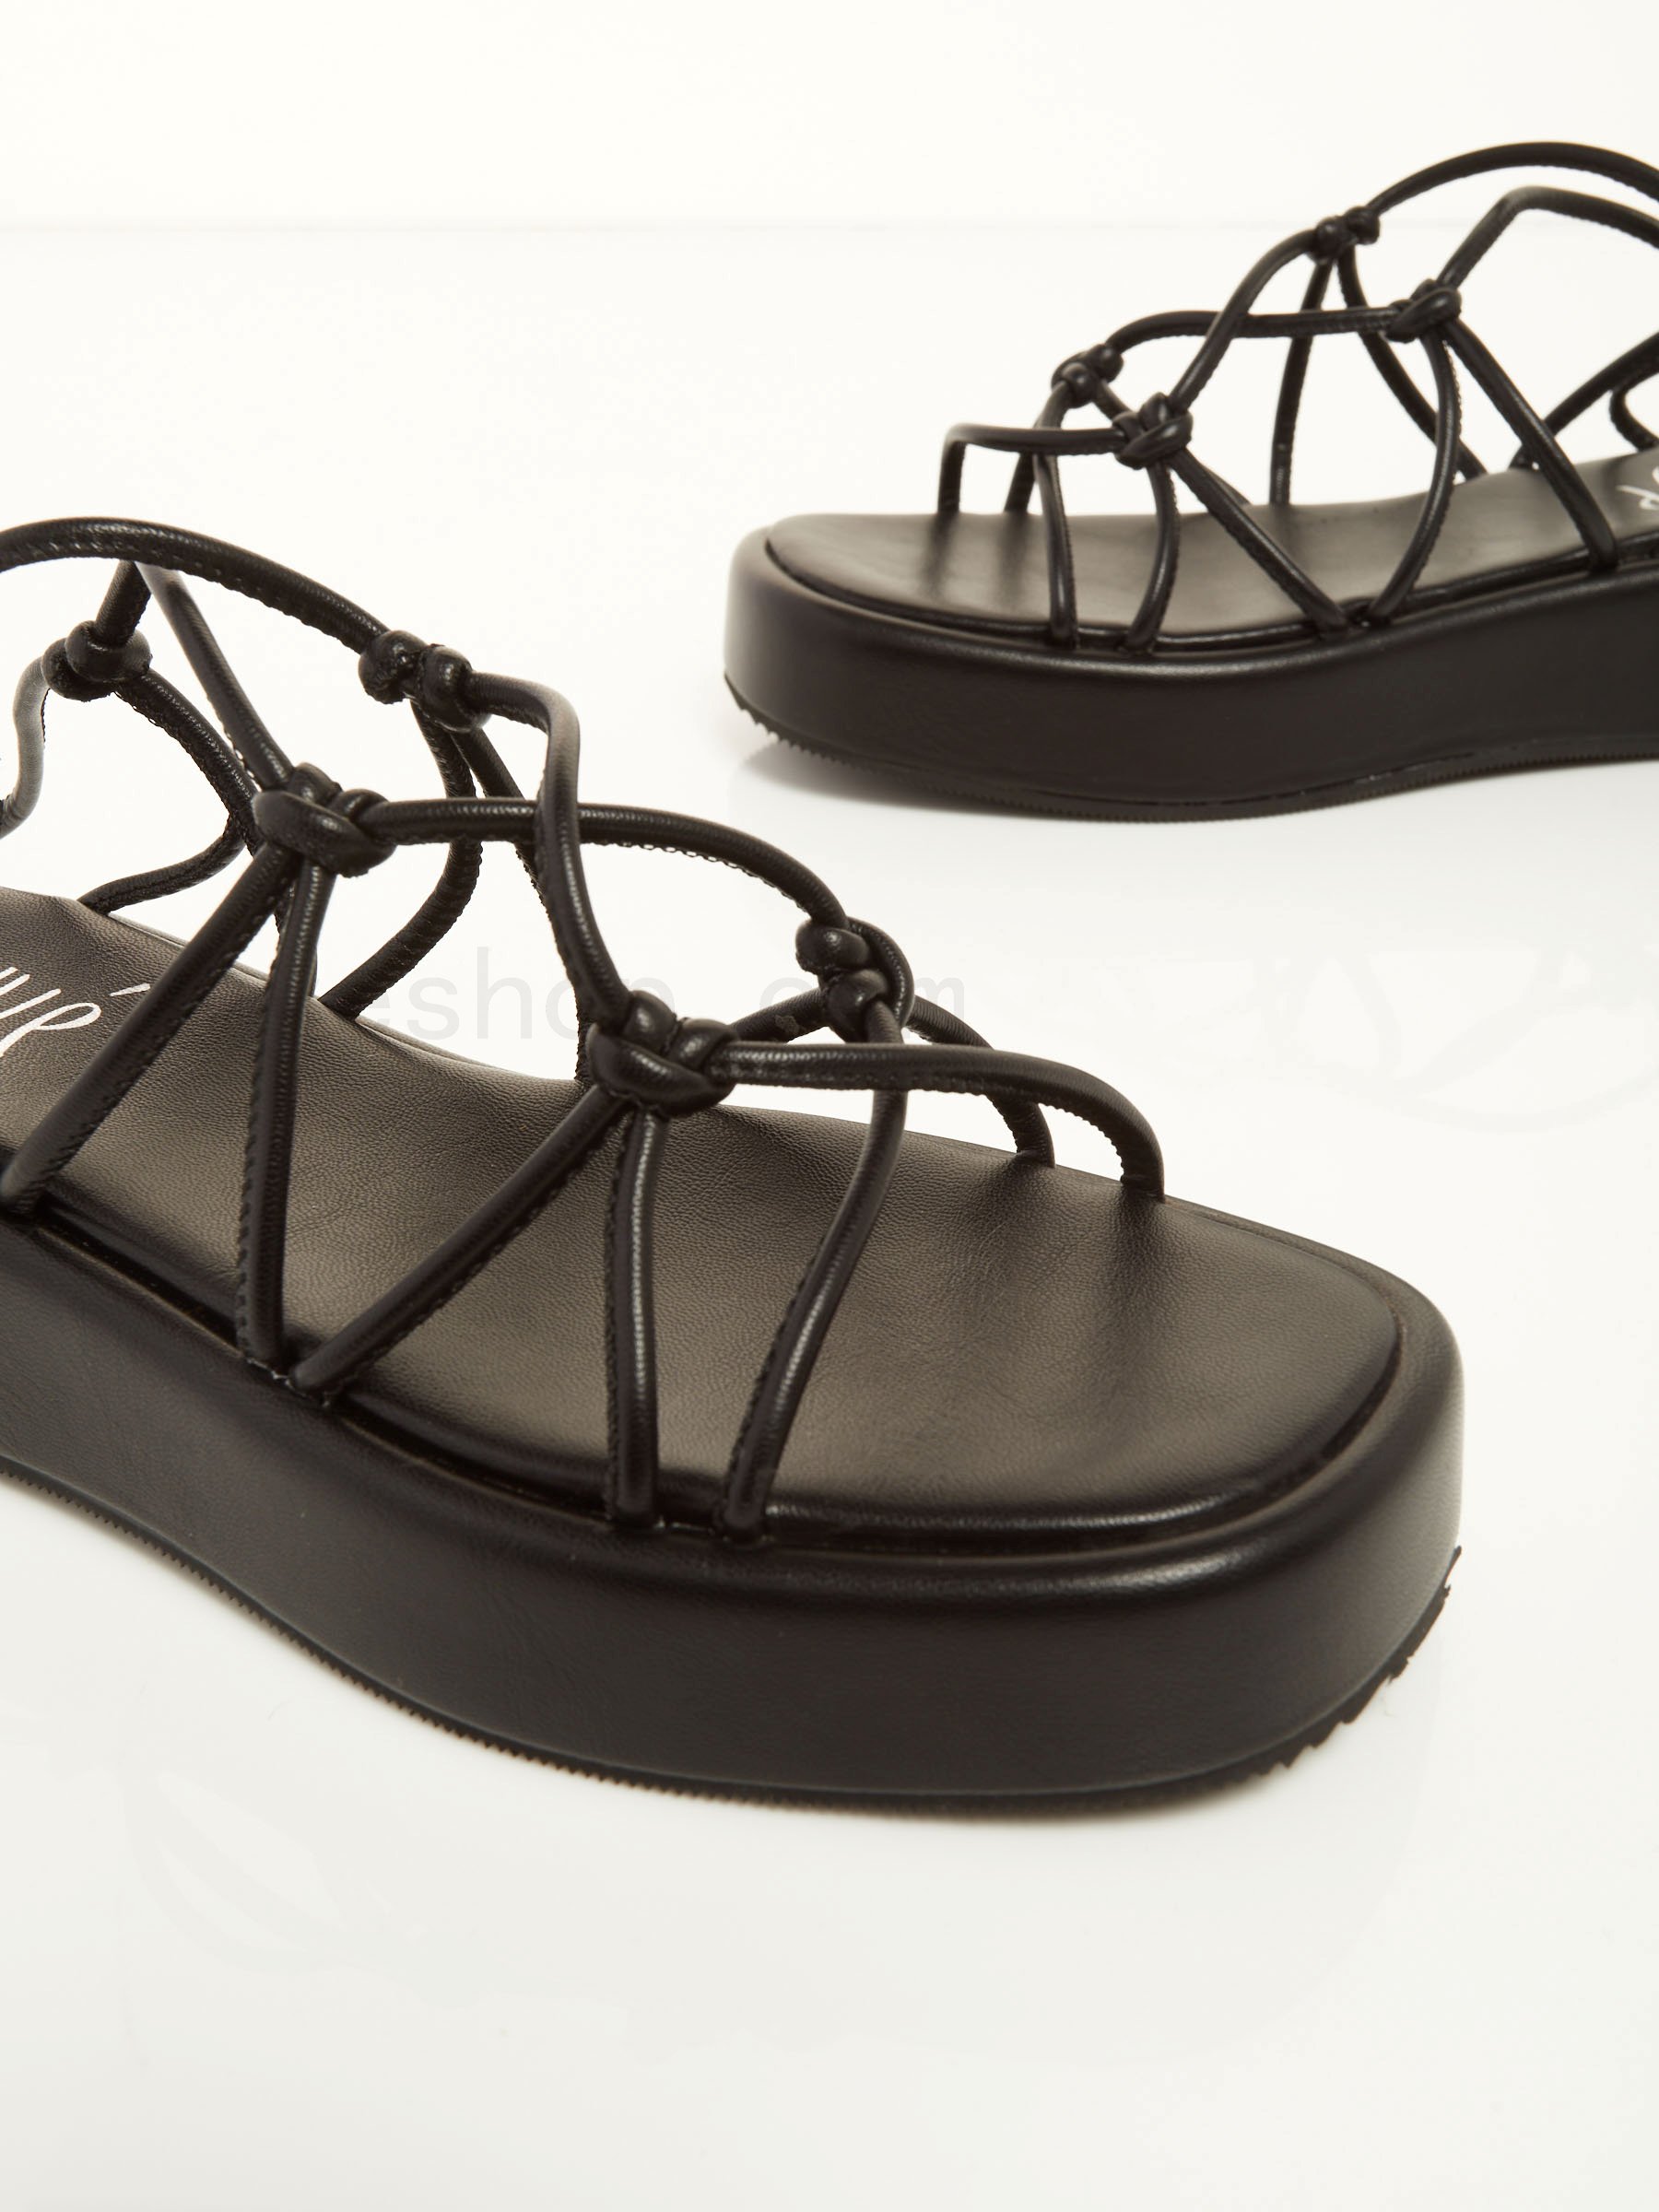 Sconti Online Greek Flat Sandals F0817885-0451 Acquistare